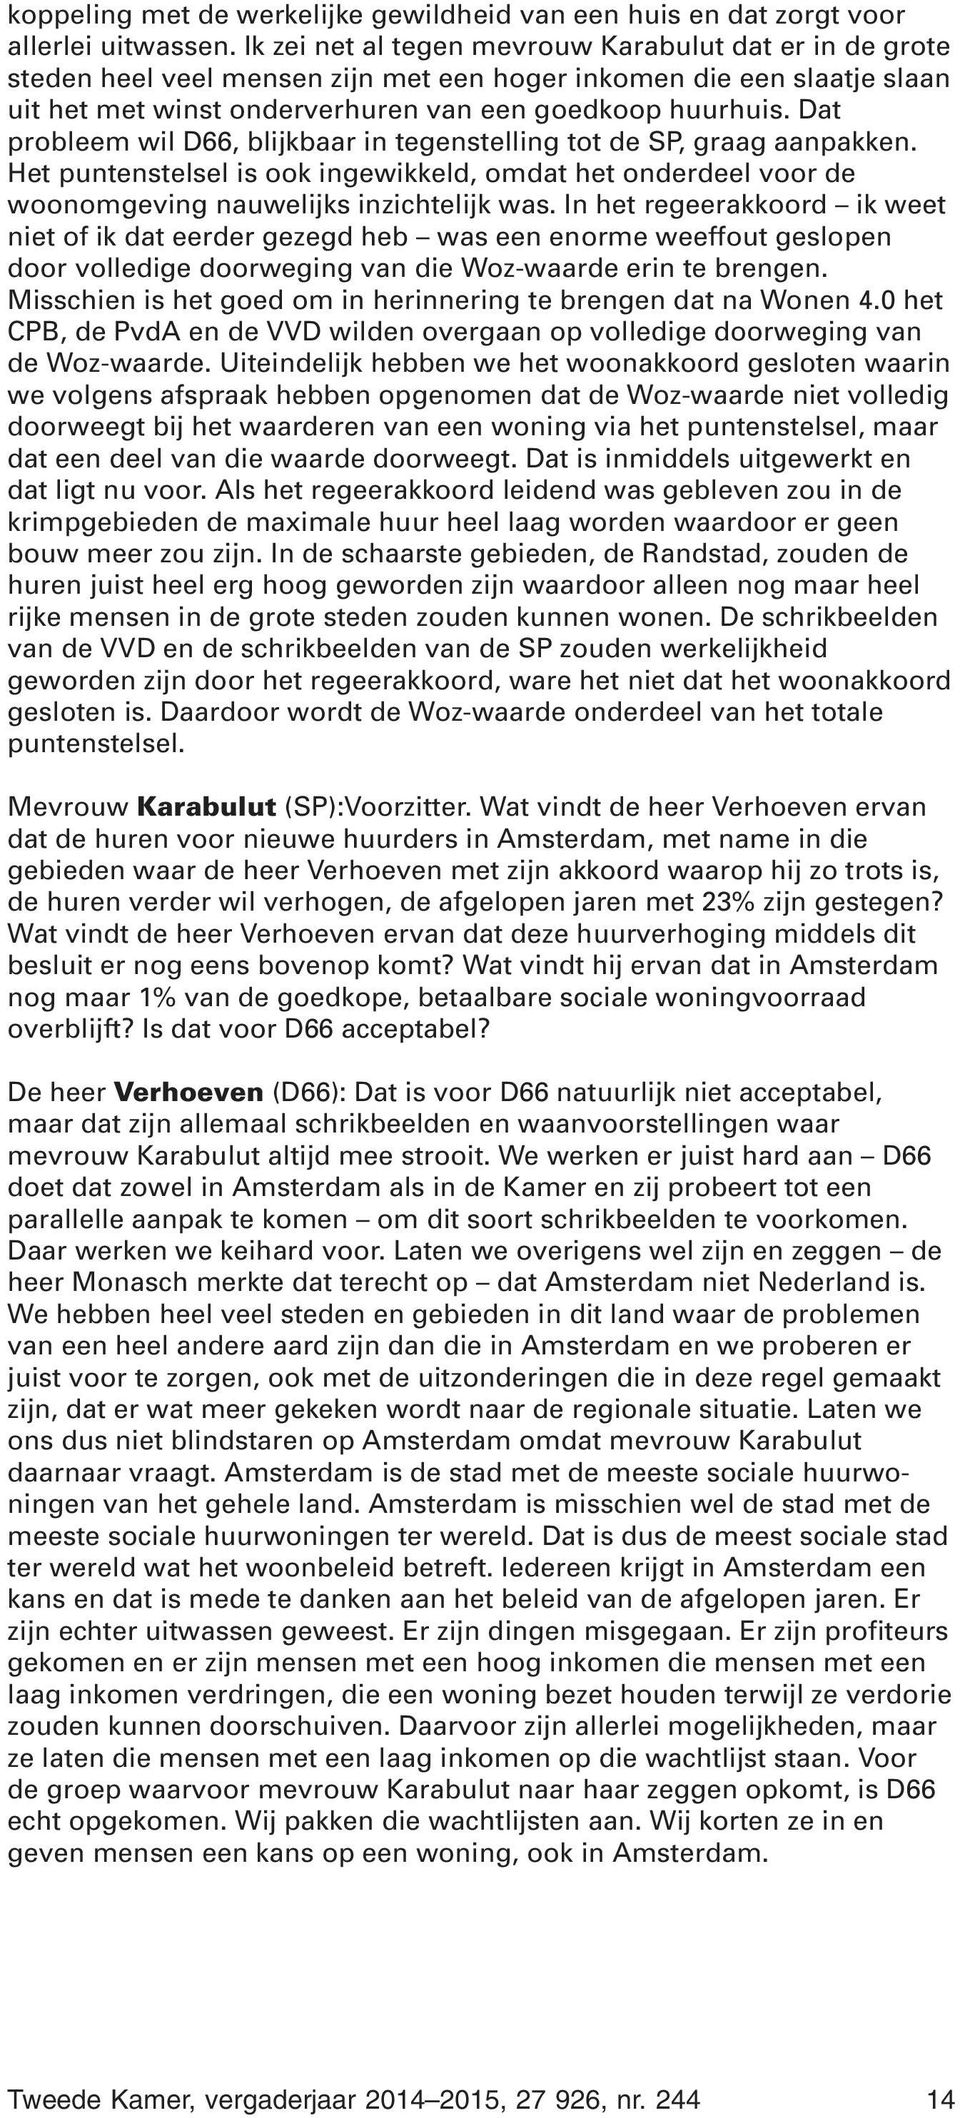 Dat probleem wil D66, blijkbaar in tegenstelling tot de SP, graag aanpakken. Het puntenstelsel is ook ingewikkeld, omdat het onderdeel voor de woonomgeving nauwelijks inzichtelijk was.